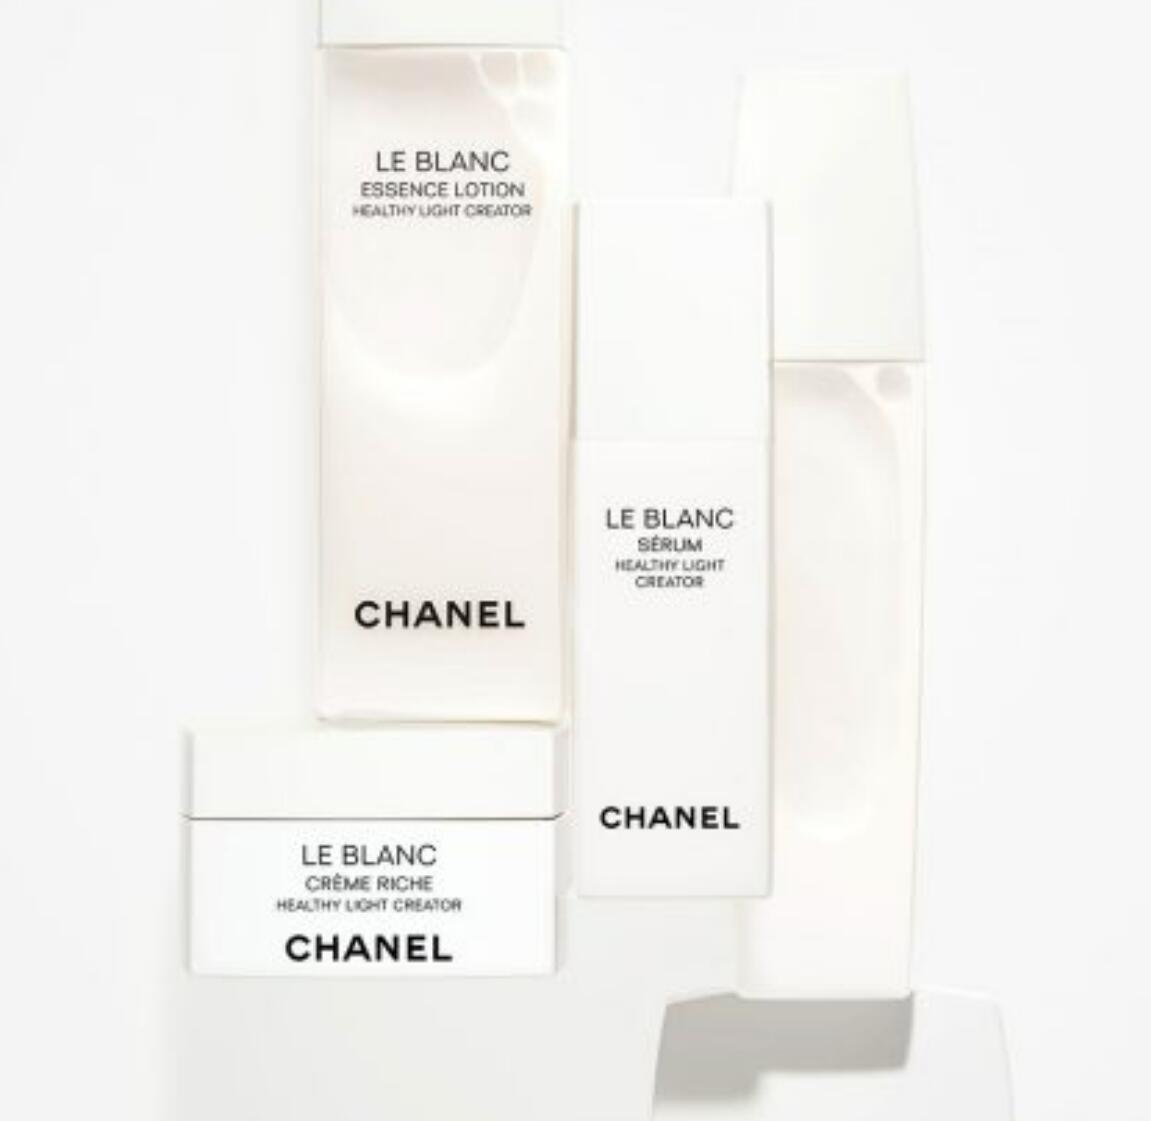 Chanel skincare 2021 (la mia opinione) le blanc essence lotion 